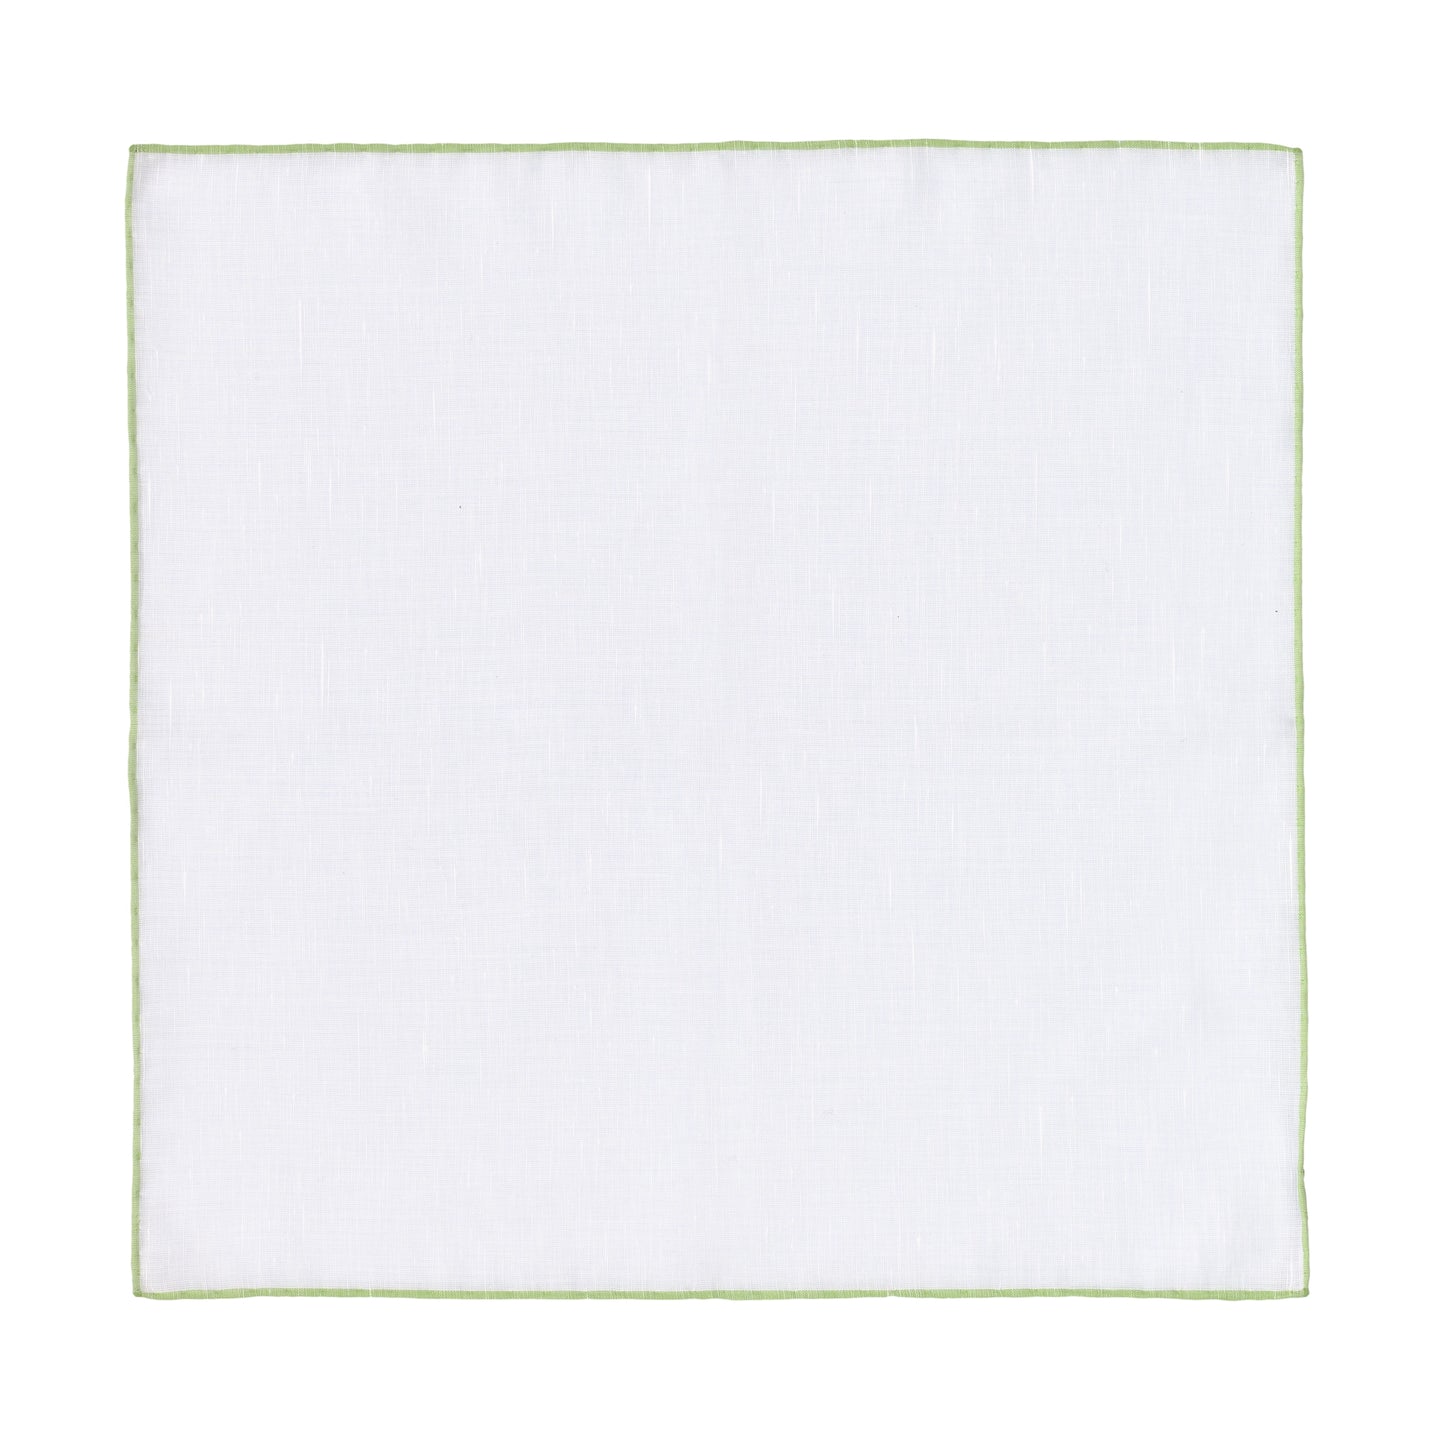 Einstecktuch aus Baumwollleinen in Weiß und Hellgrün